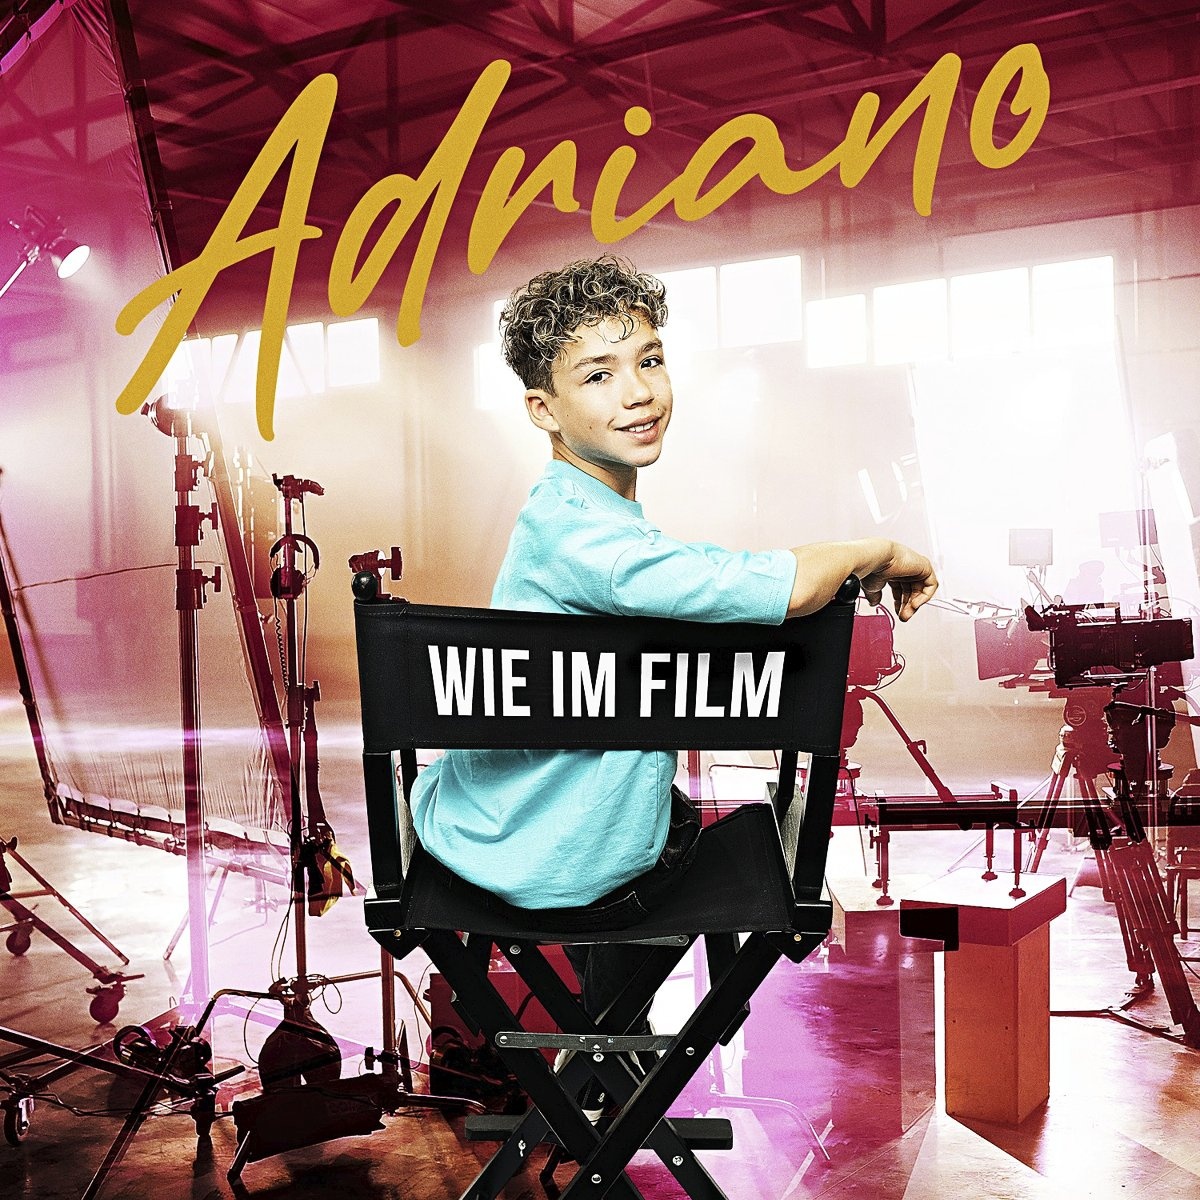 Wie im Film - Adriano. (CD)